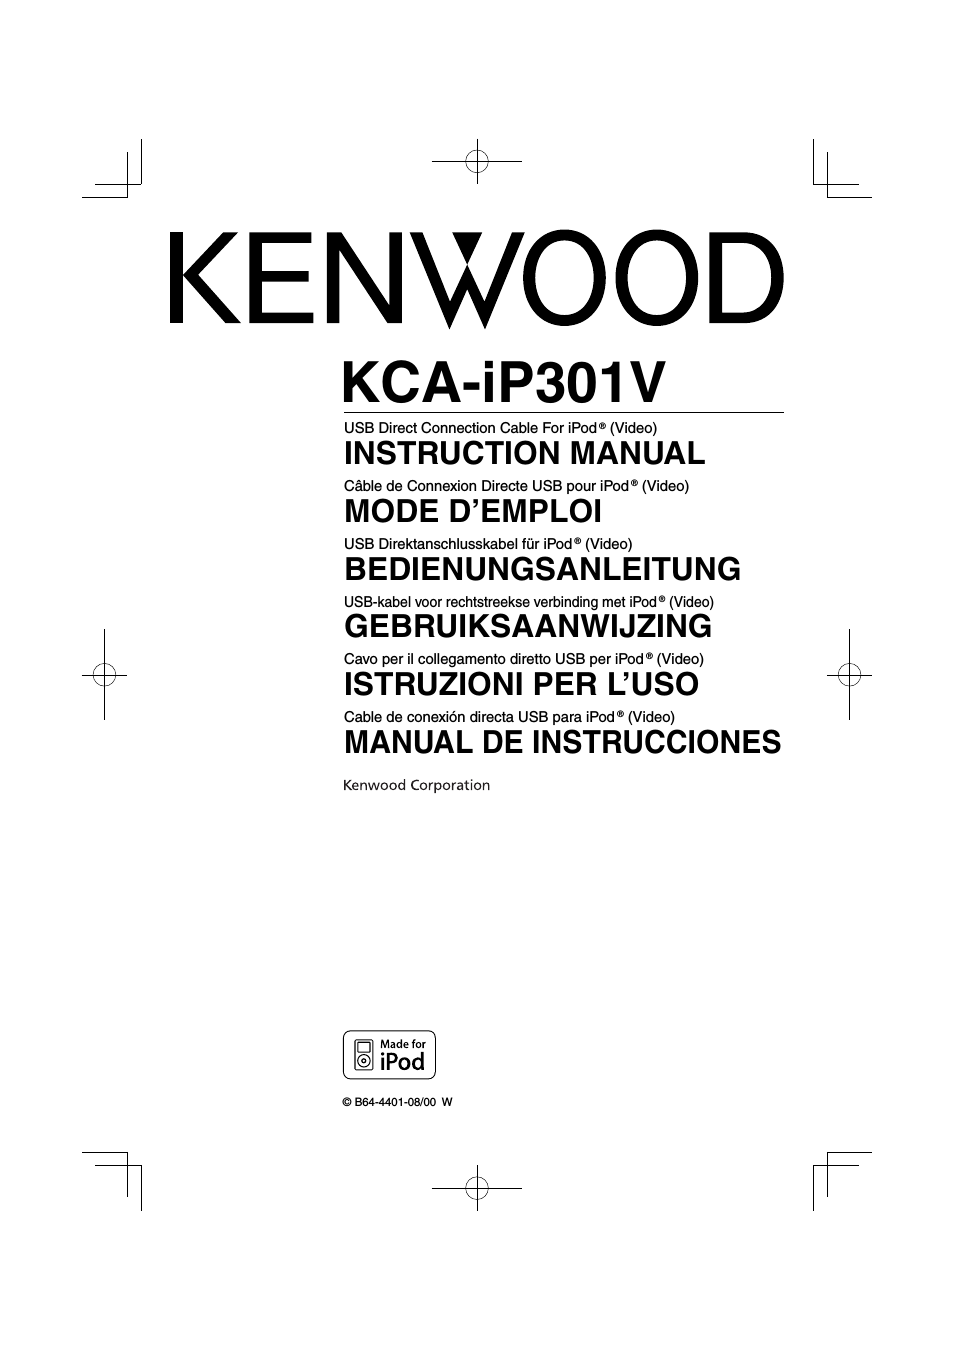 KCA-iP301V